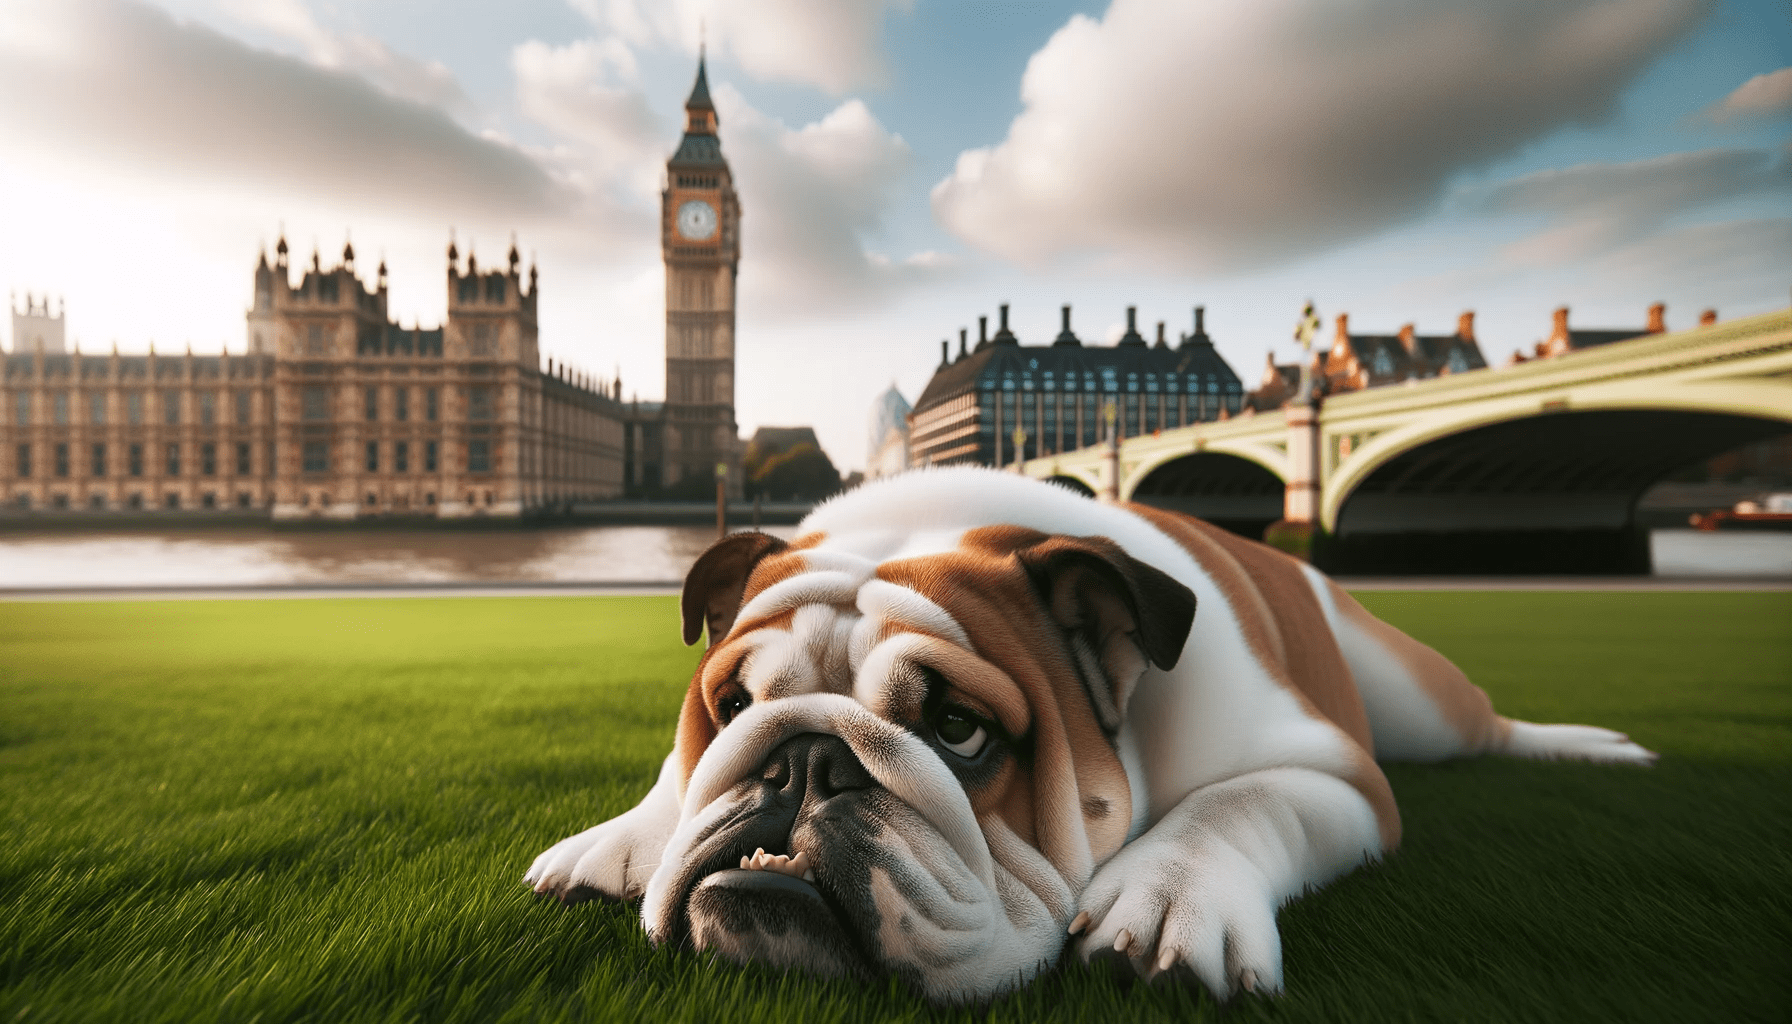 Englische Bulldogge: Ein liebevoller Familienhund mit Geschichte